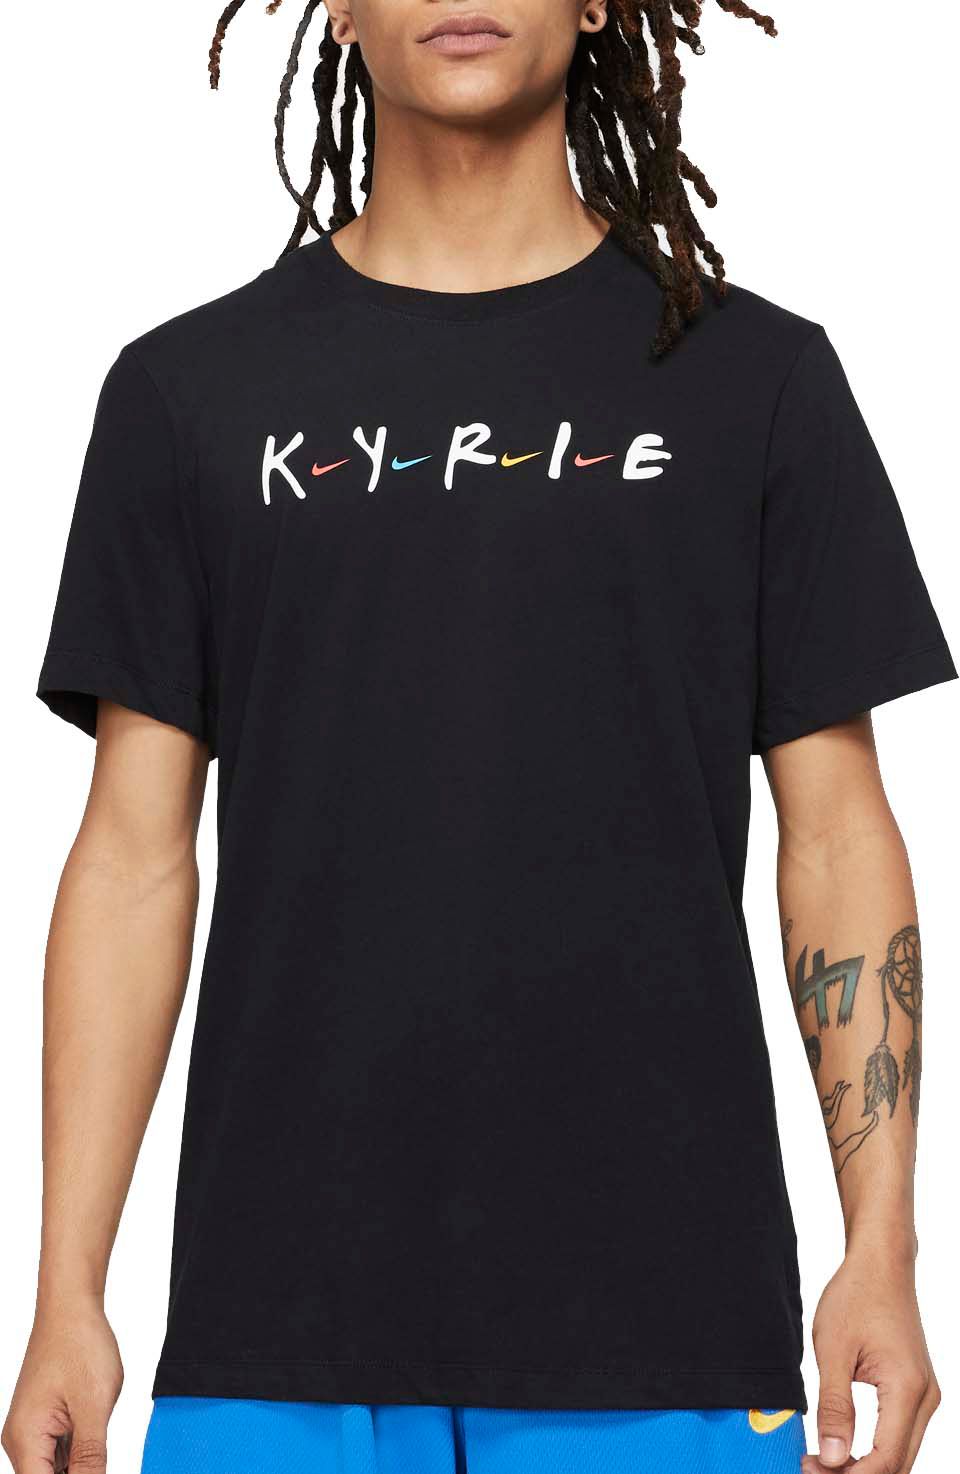 friends kyrie shirt